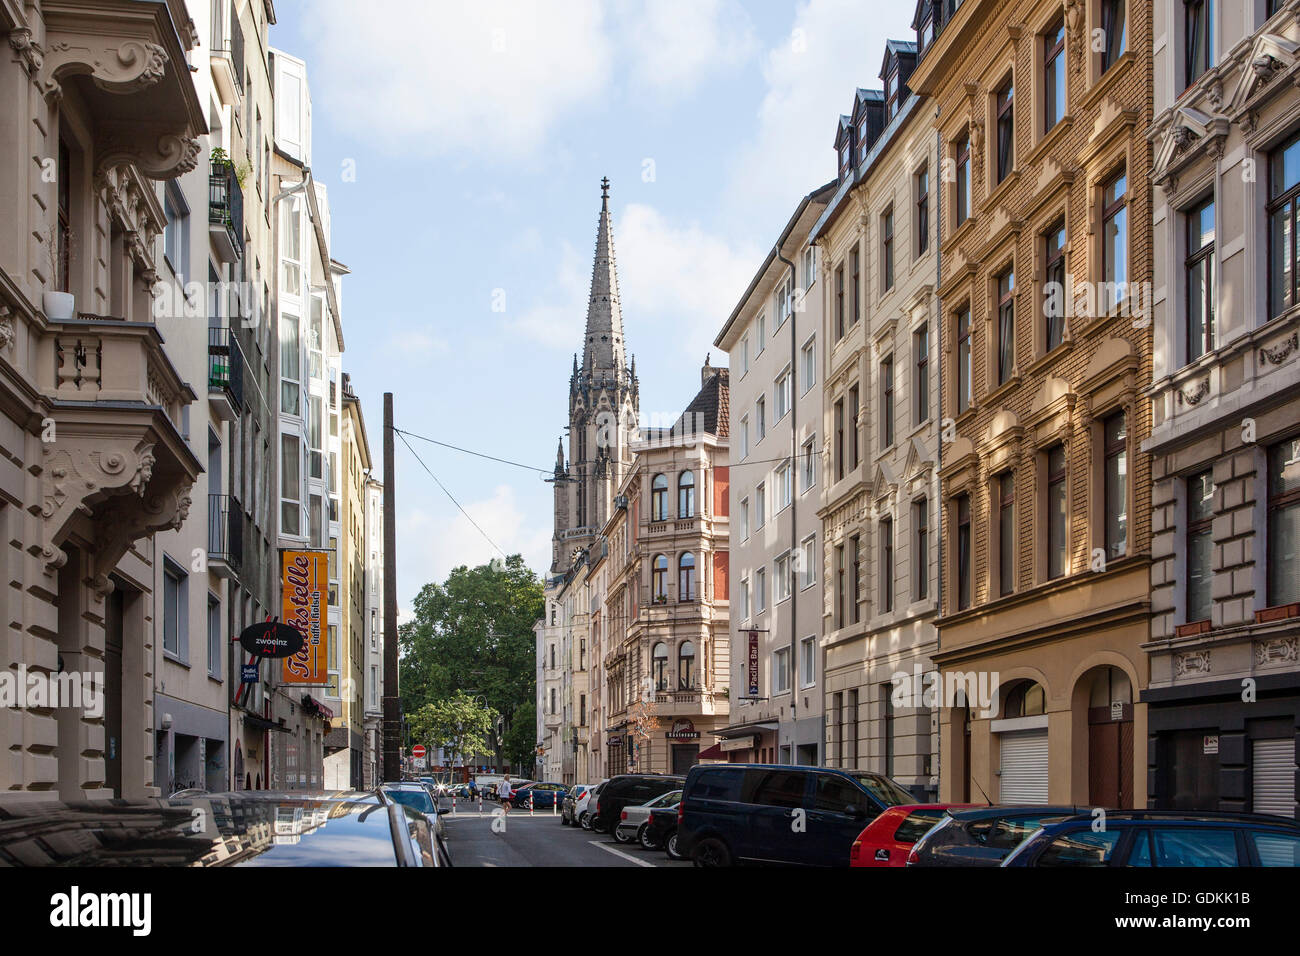 Europa, Köln, Wohngebäude an der Hochstaden Straße, Herz Jesu Kirche am Zuelpicher Platz Stockfoto